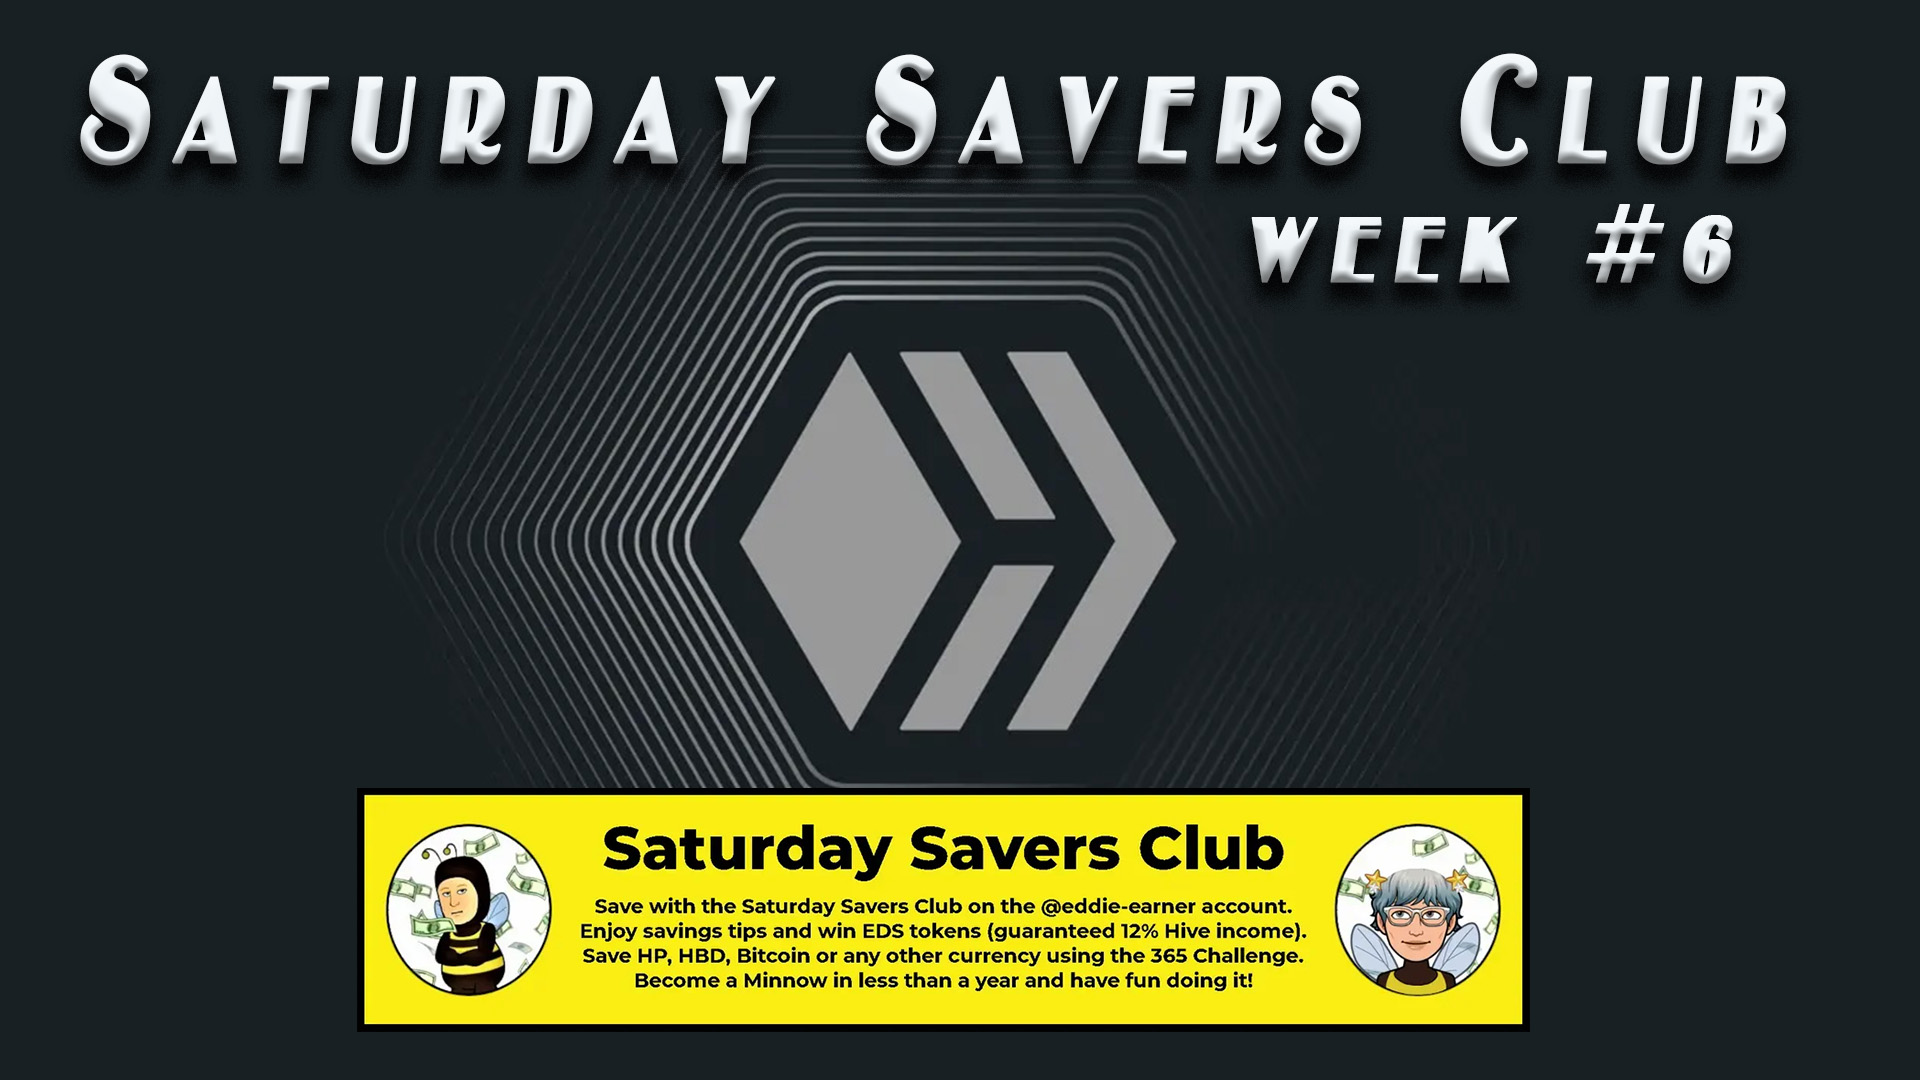 @stdd/saturday-savers-club-week-6